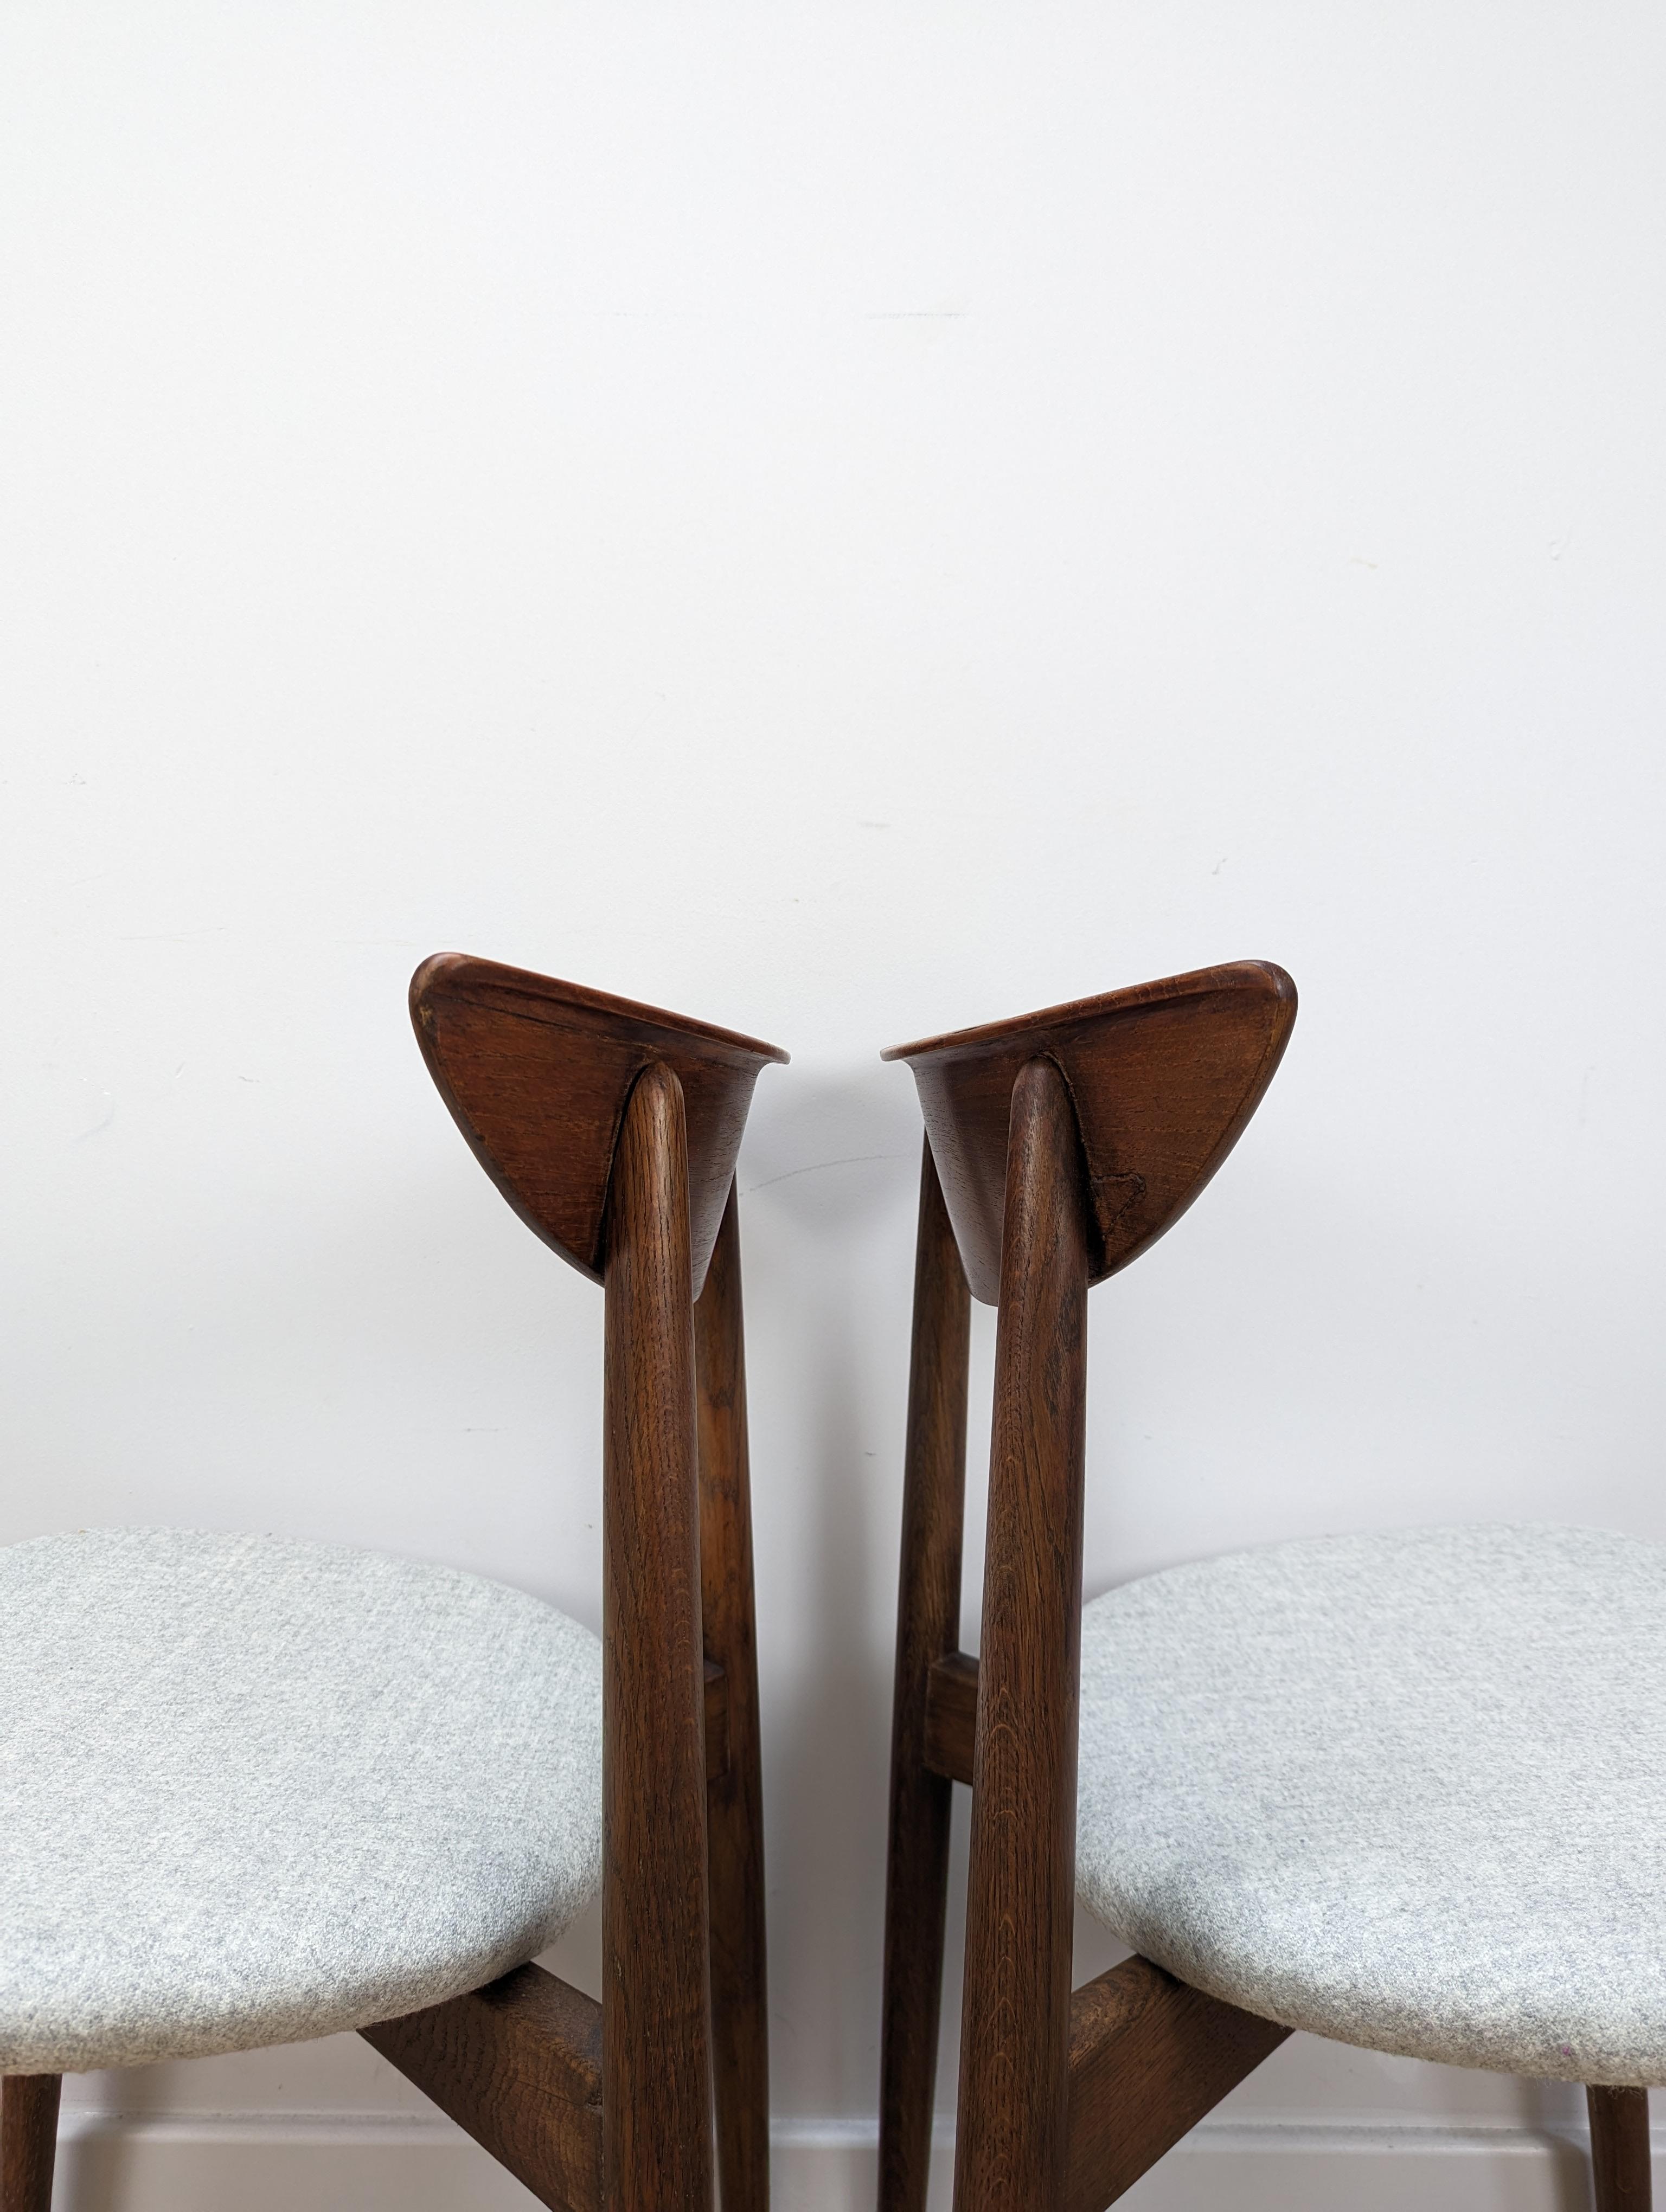 Dieses Paar Stühle aus Teakholz, das Harry Østergaard für die Randers Møbelfabrik entworfen hat, ist mit seiner schön geformten Rückenlehne und den gespreizten Beinen zeitlos. Das Ergebnis ist ein eleganter Stuhl, auf dem man unglaublich bequem